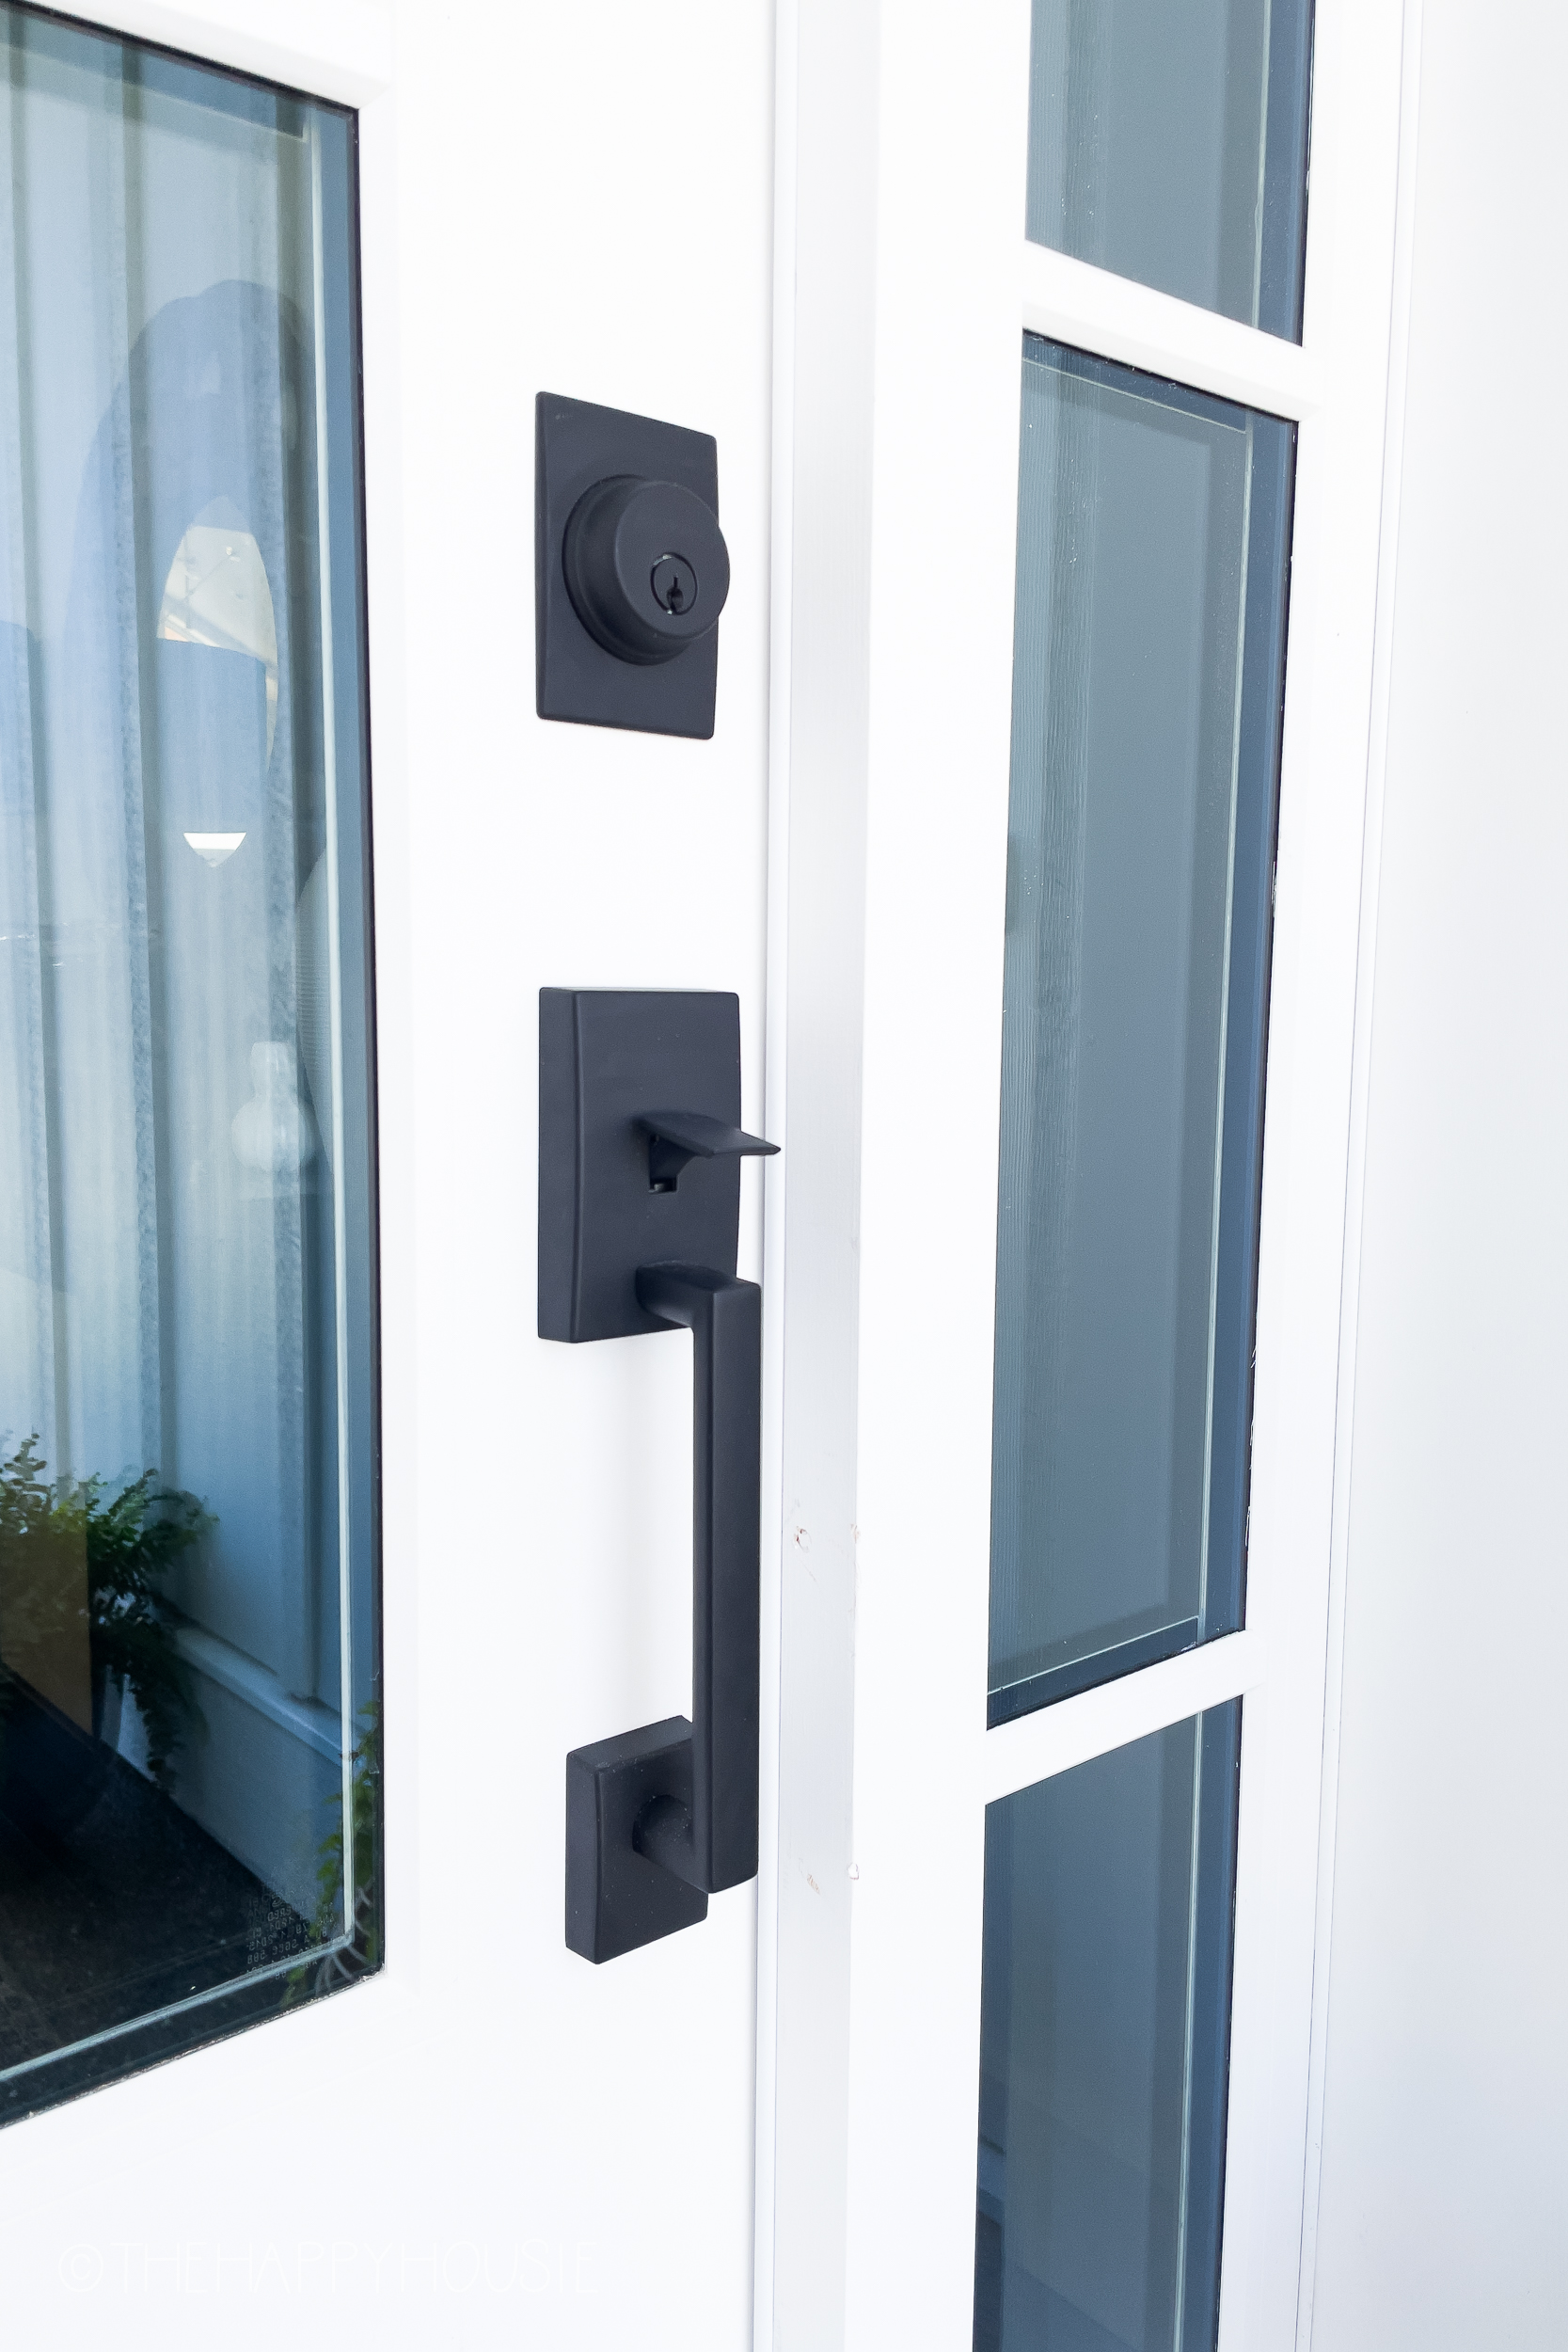 Our Front Door Handle & How to Choose Exterior Door Hardware